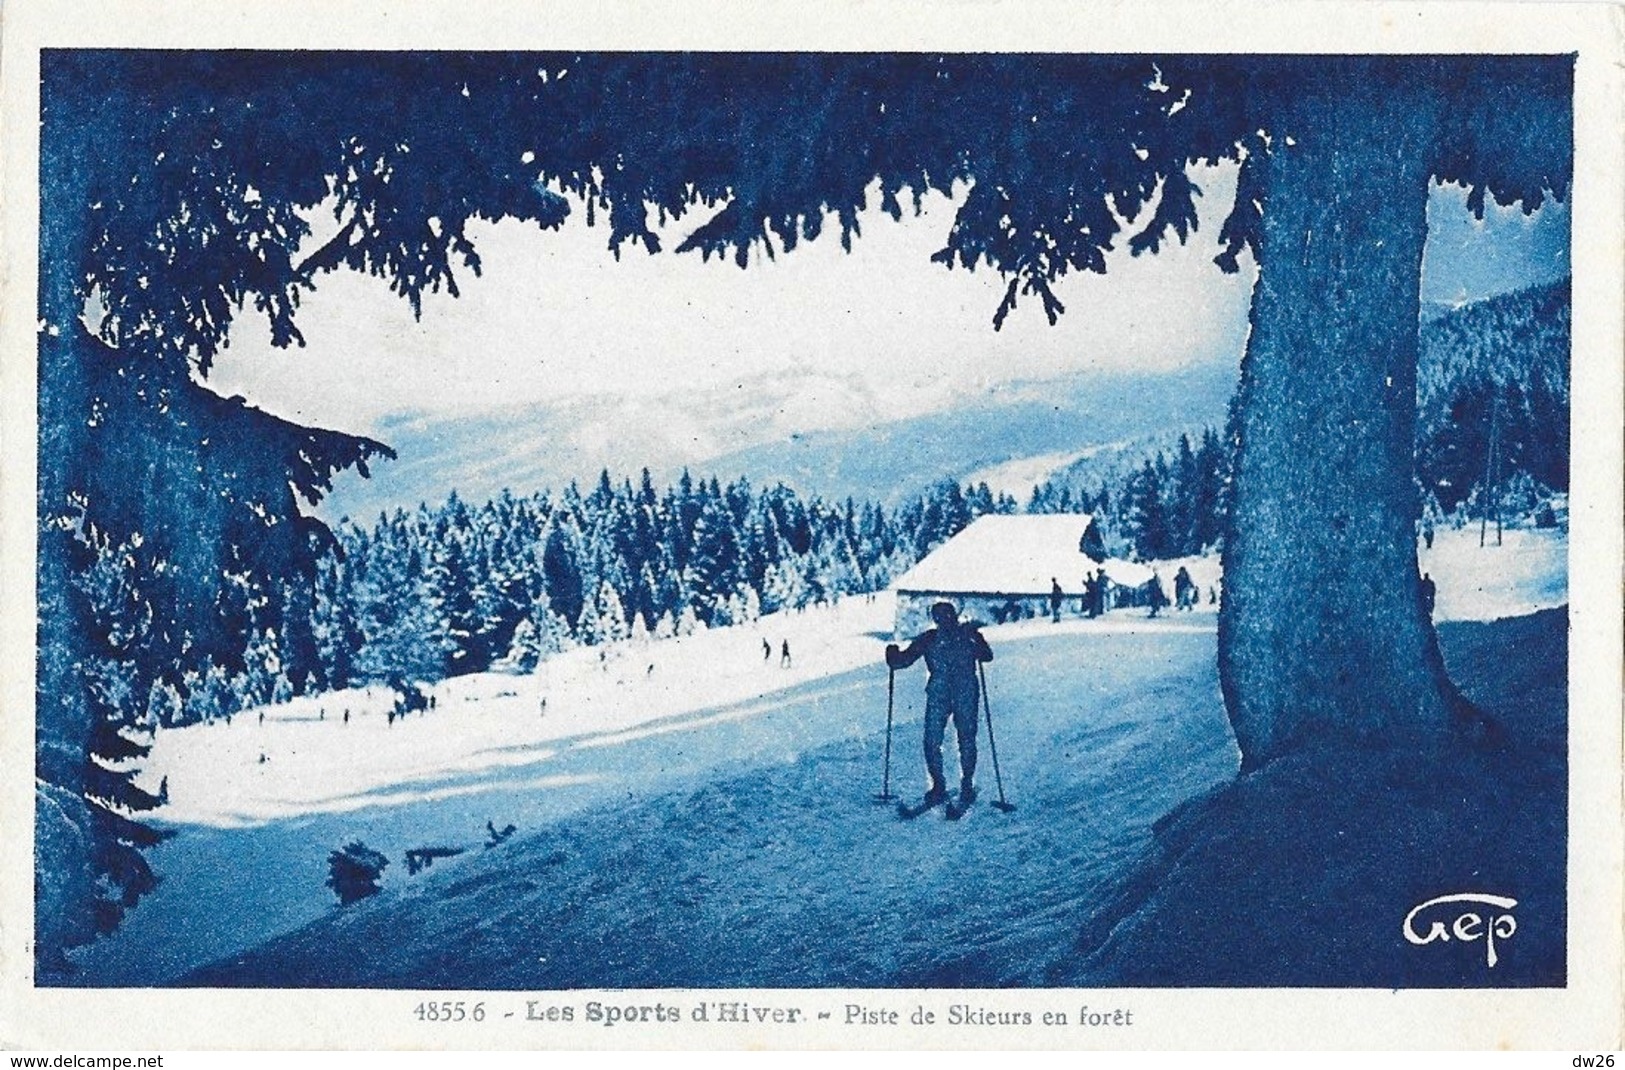 Les Sports D'Hiver - Ski De Randonnée: Piste De Skieurs En Forêt - Carte GEP Cyan N° 4855.6 - Winter Sports